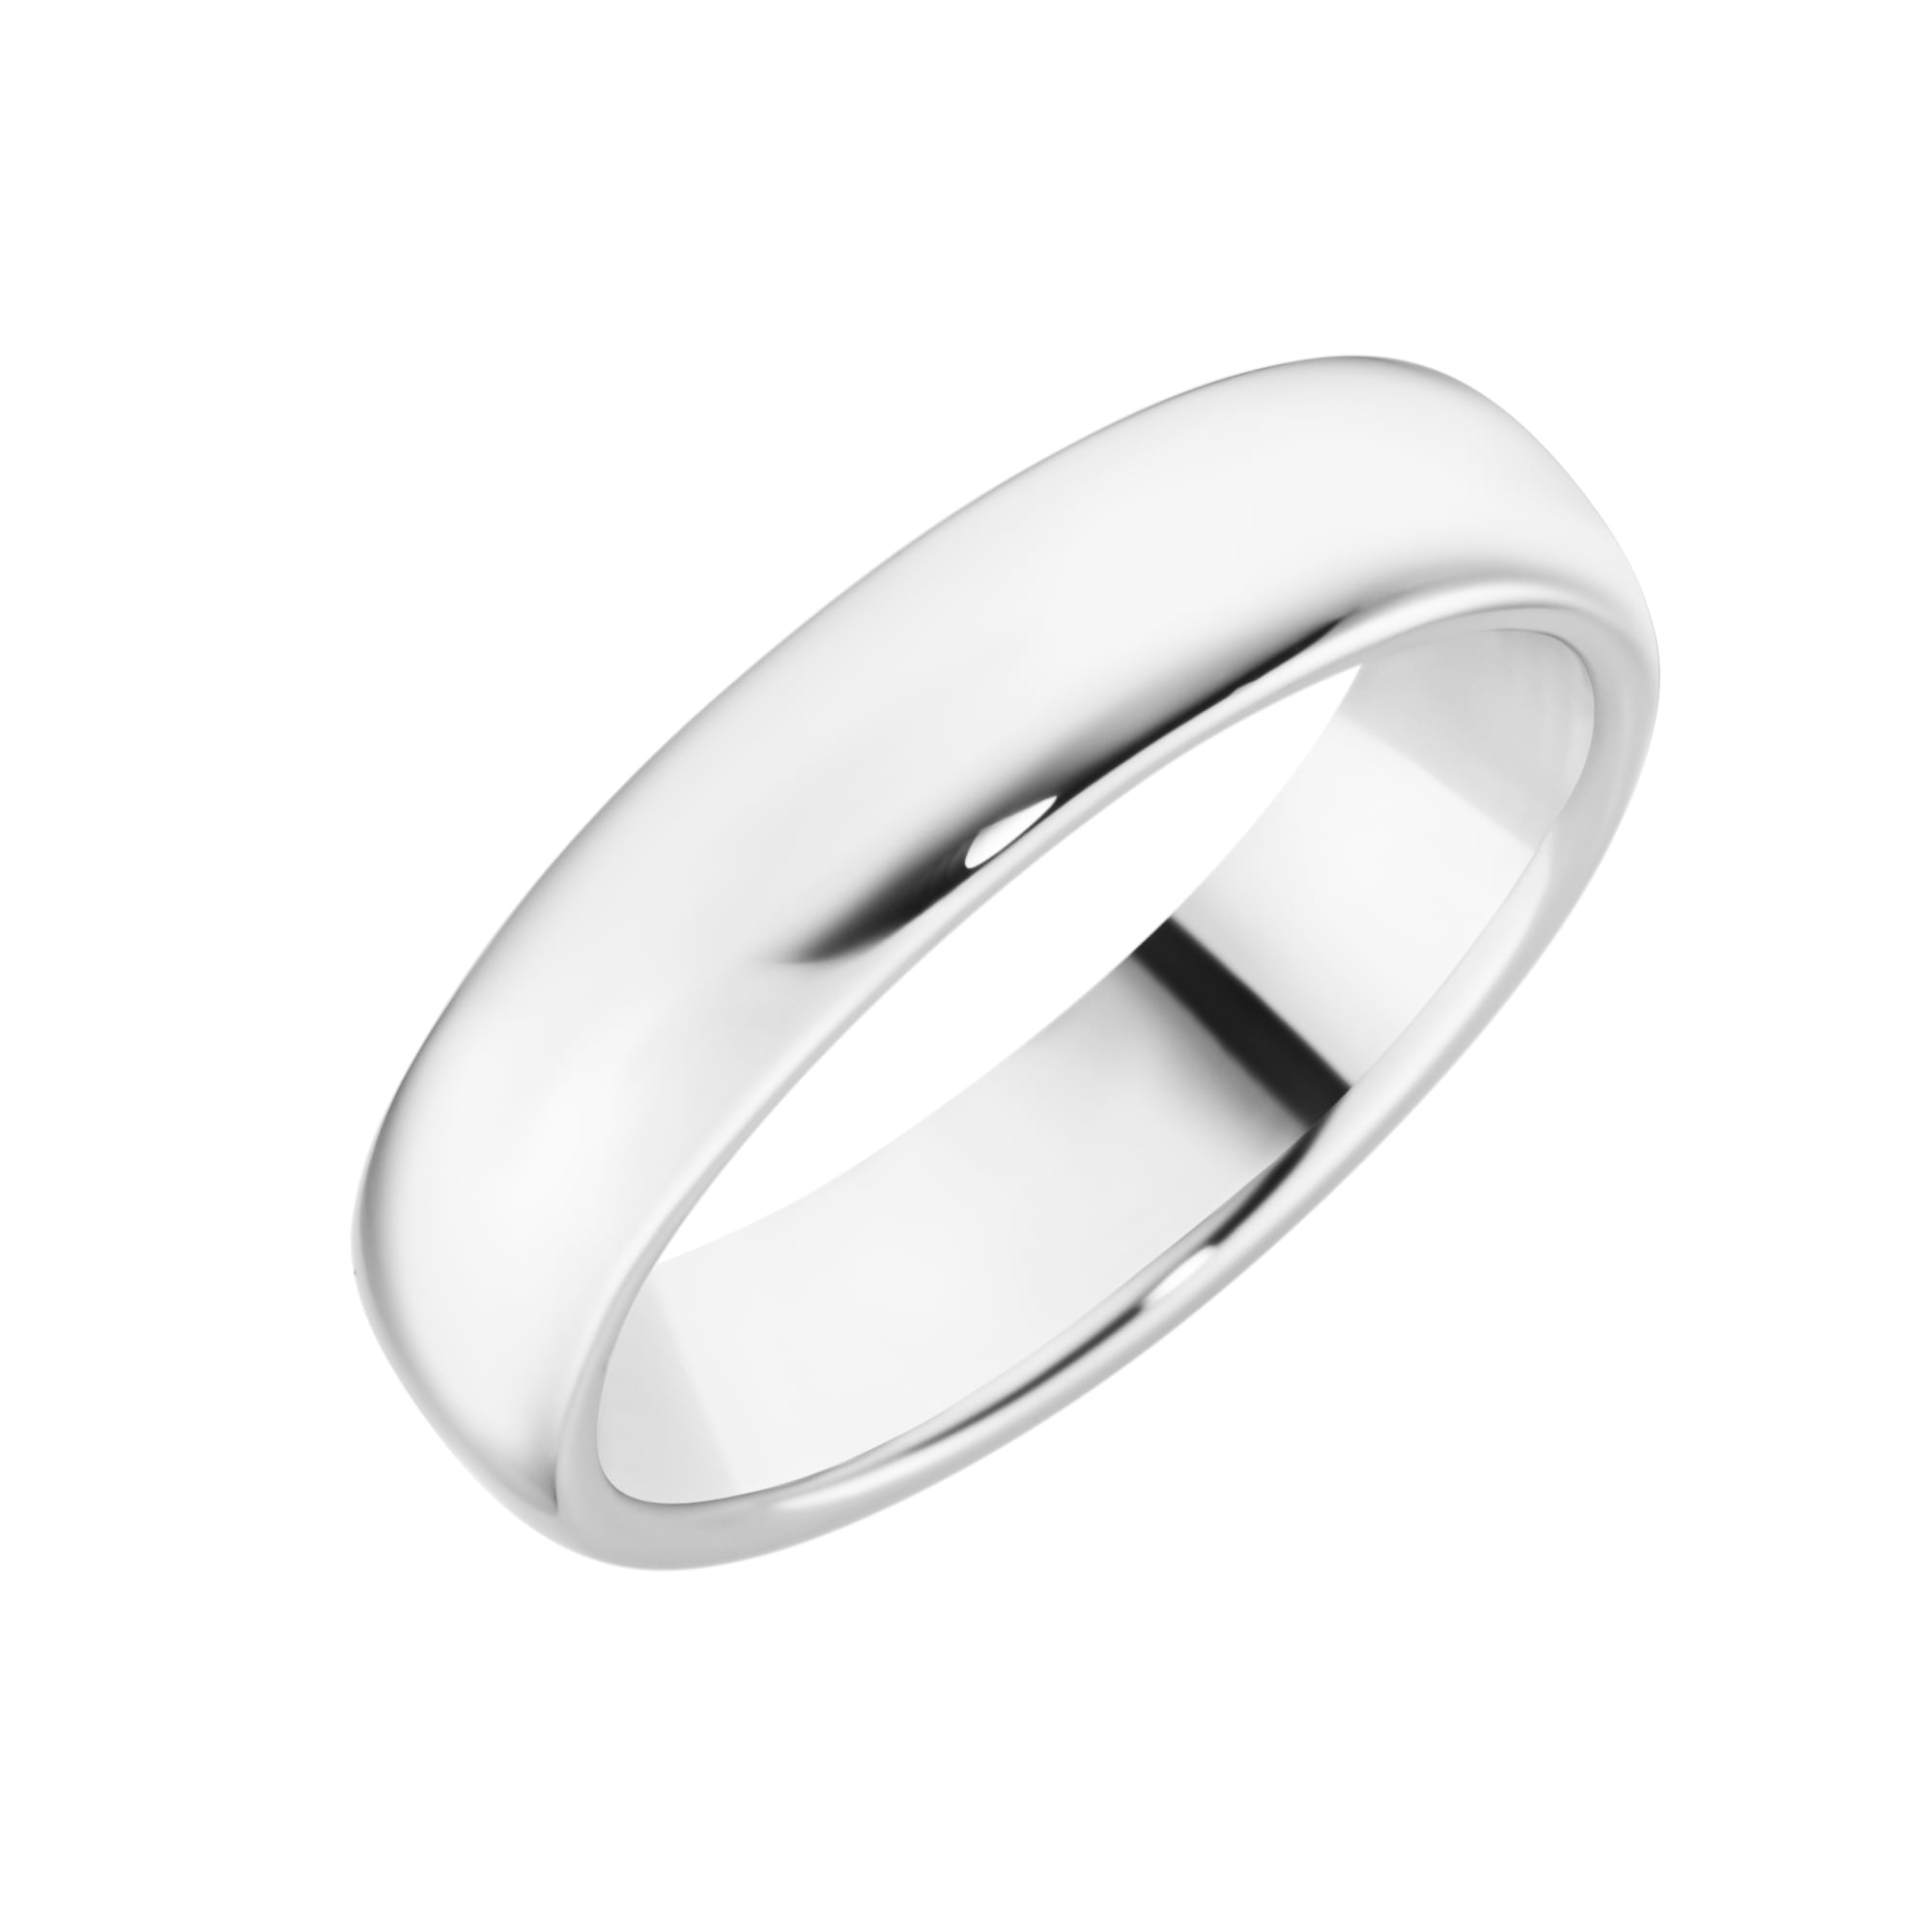 Silberring »Ring Schiene gewölbt, Silber 925«